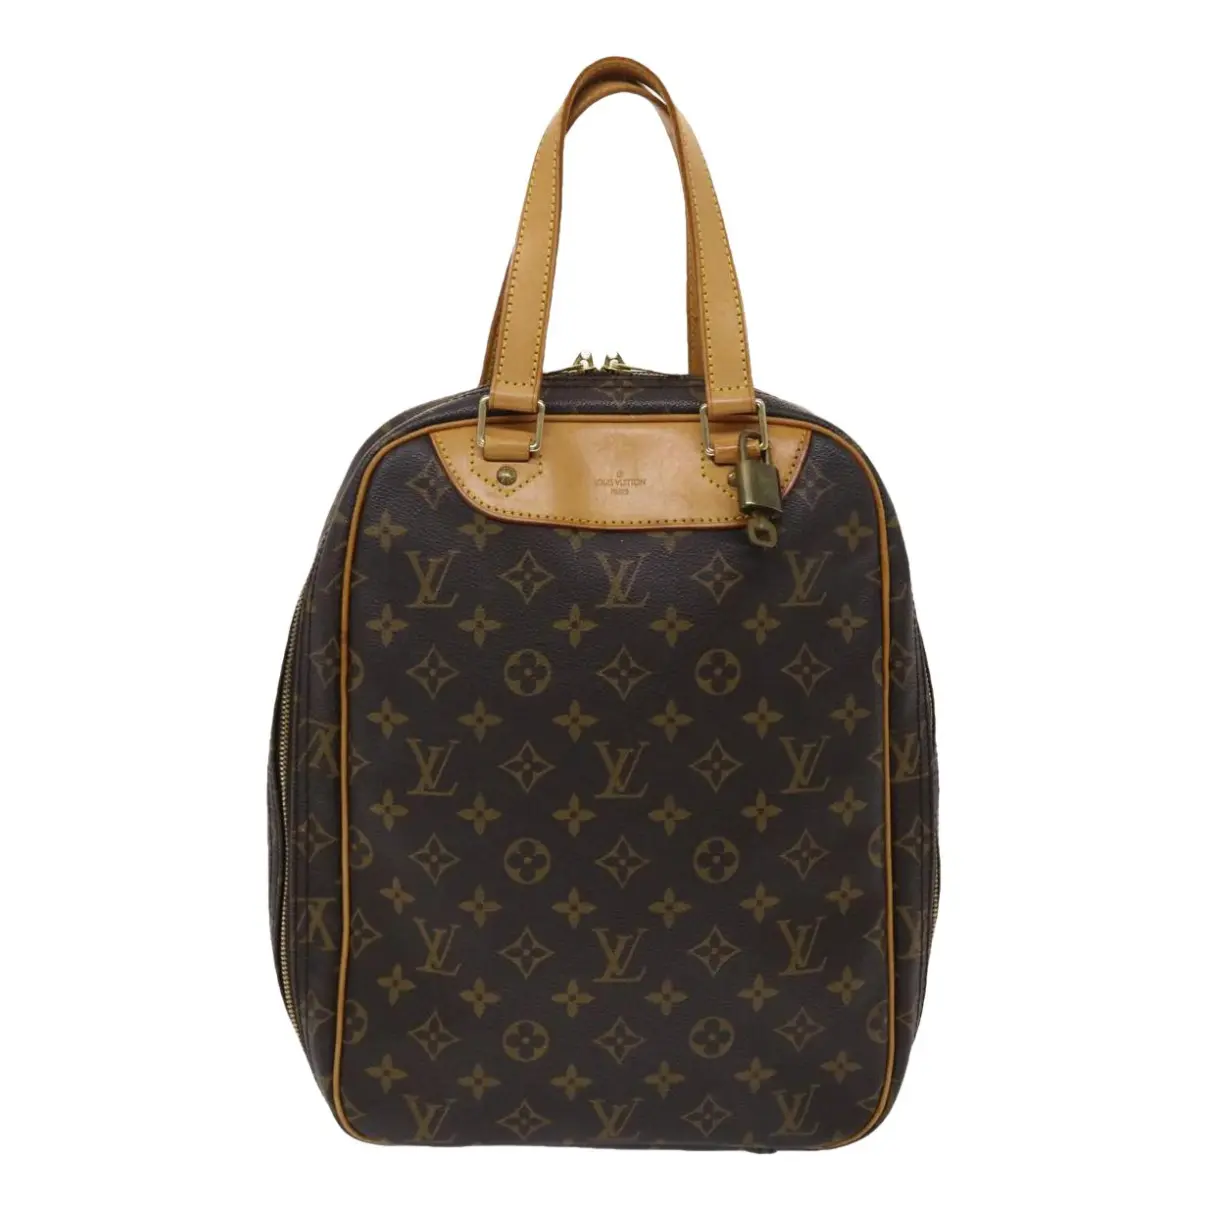 Excursion handbag Louis Vuitton